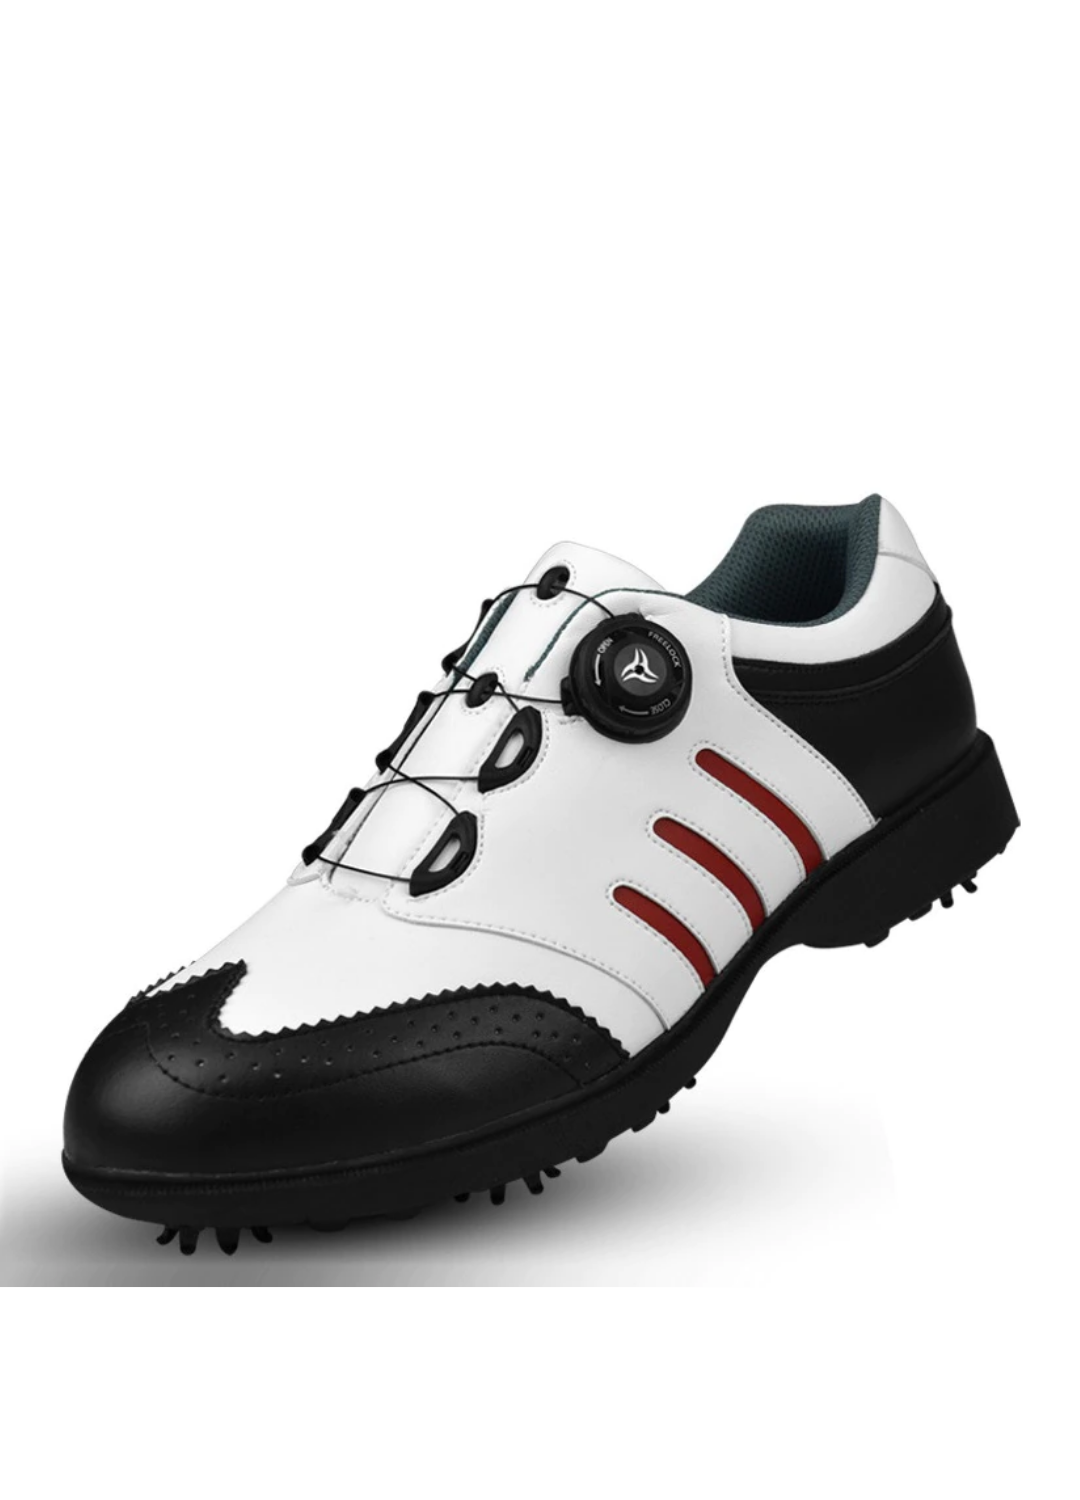 Vergil Men's Golf Shoes | Ultrasellershoes.com – Ultra Seller Shoes